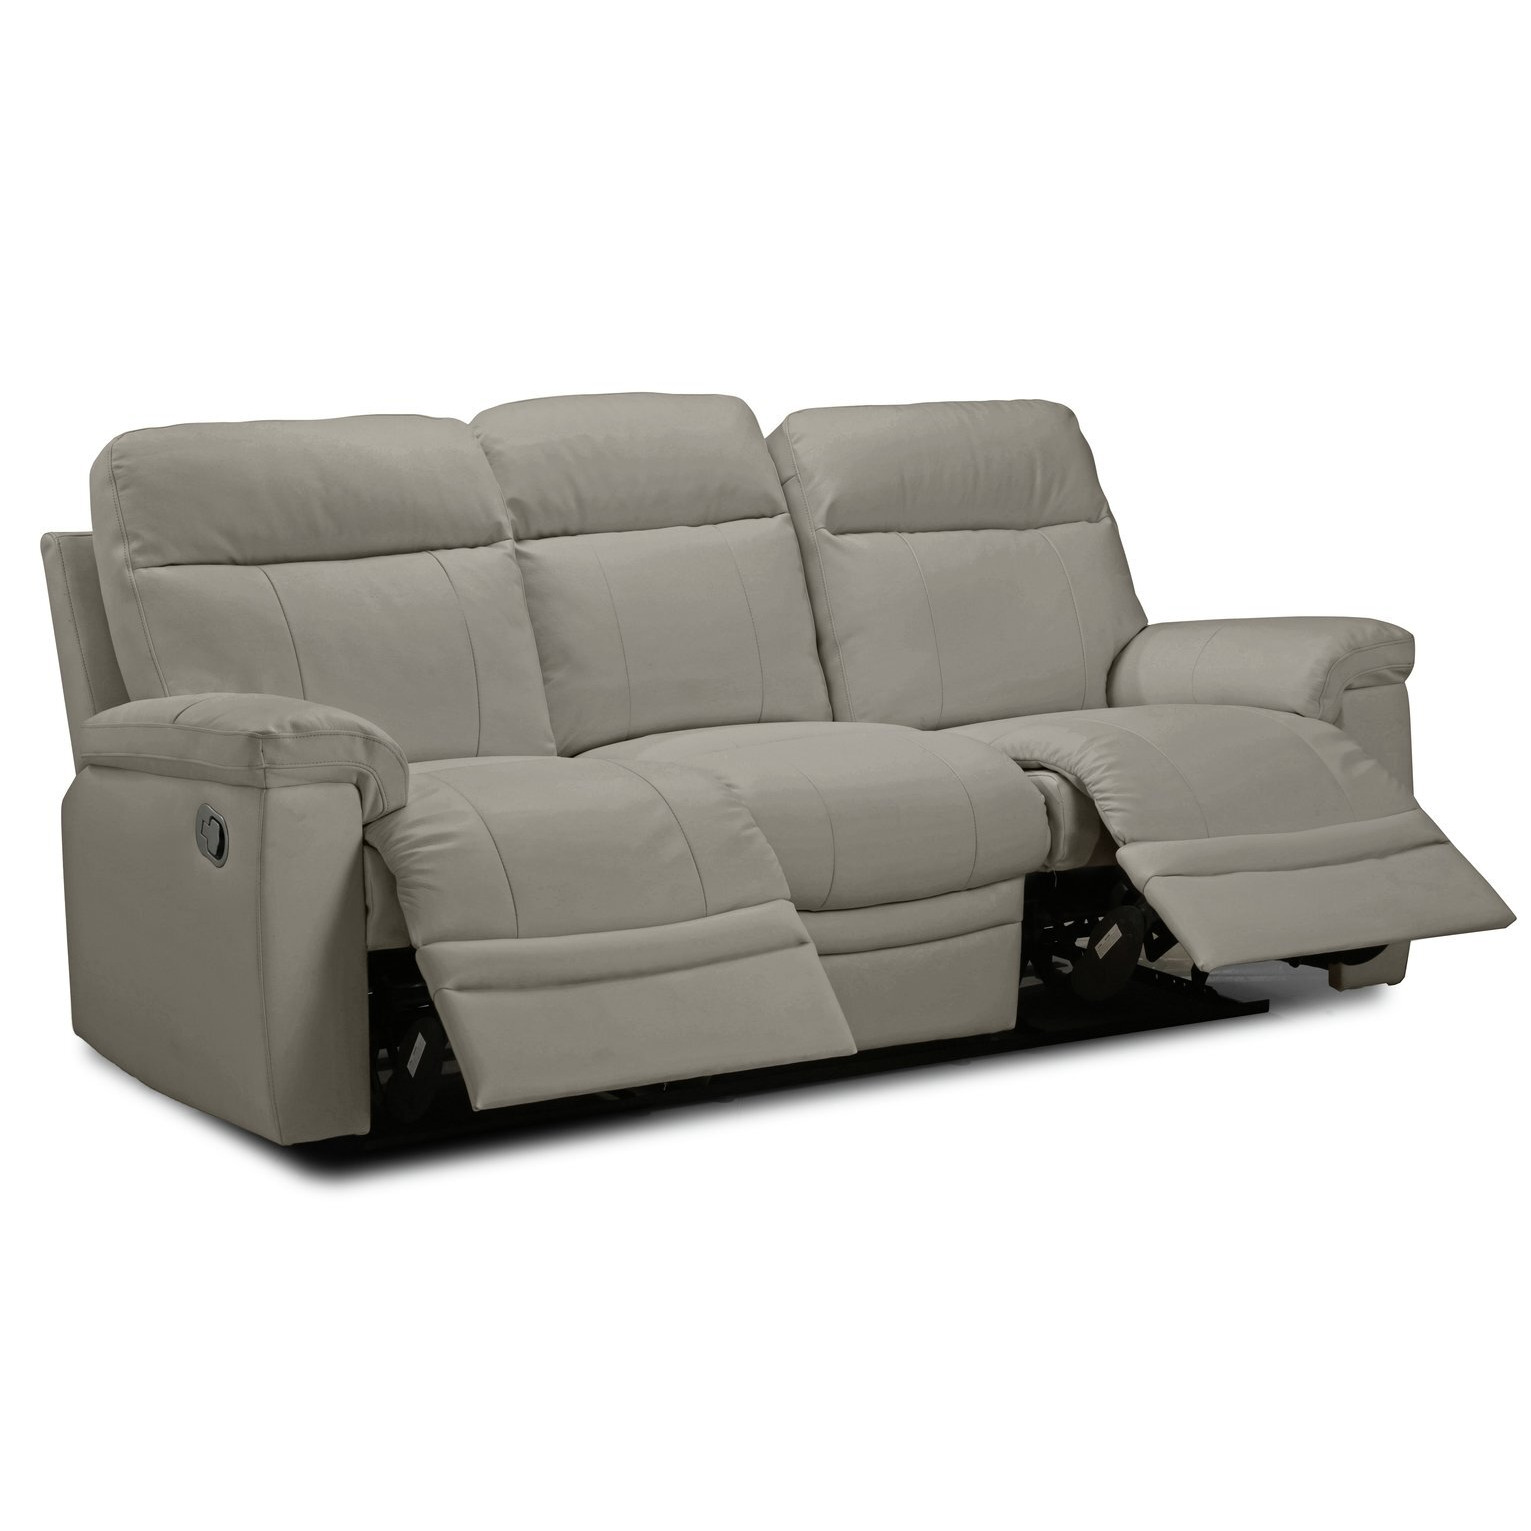 Seater Manual Recliner Sofa Grey